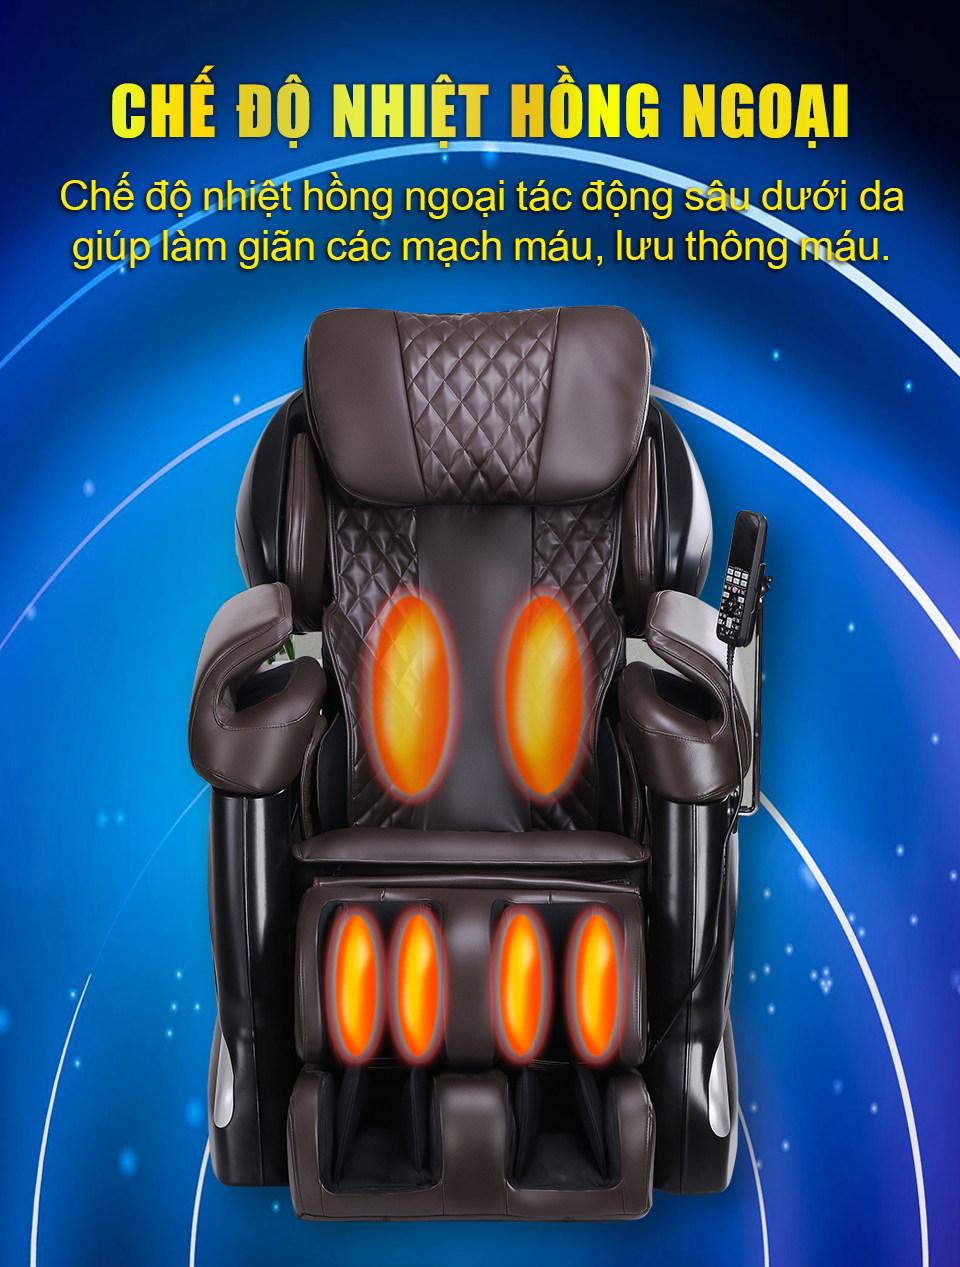 Chế độ nhiệt hồng ngoại của ghế massage H6 giúp mạch máu lưu thông tốt hơn